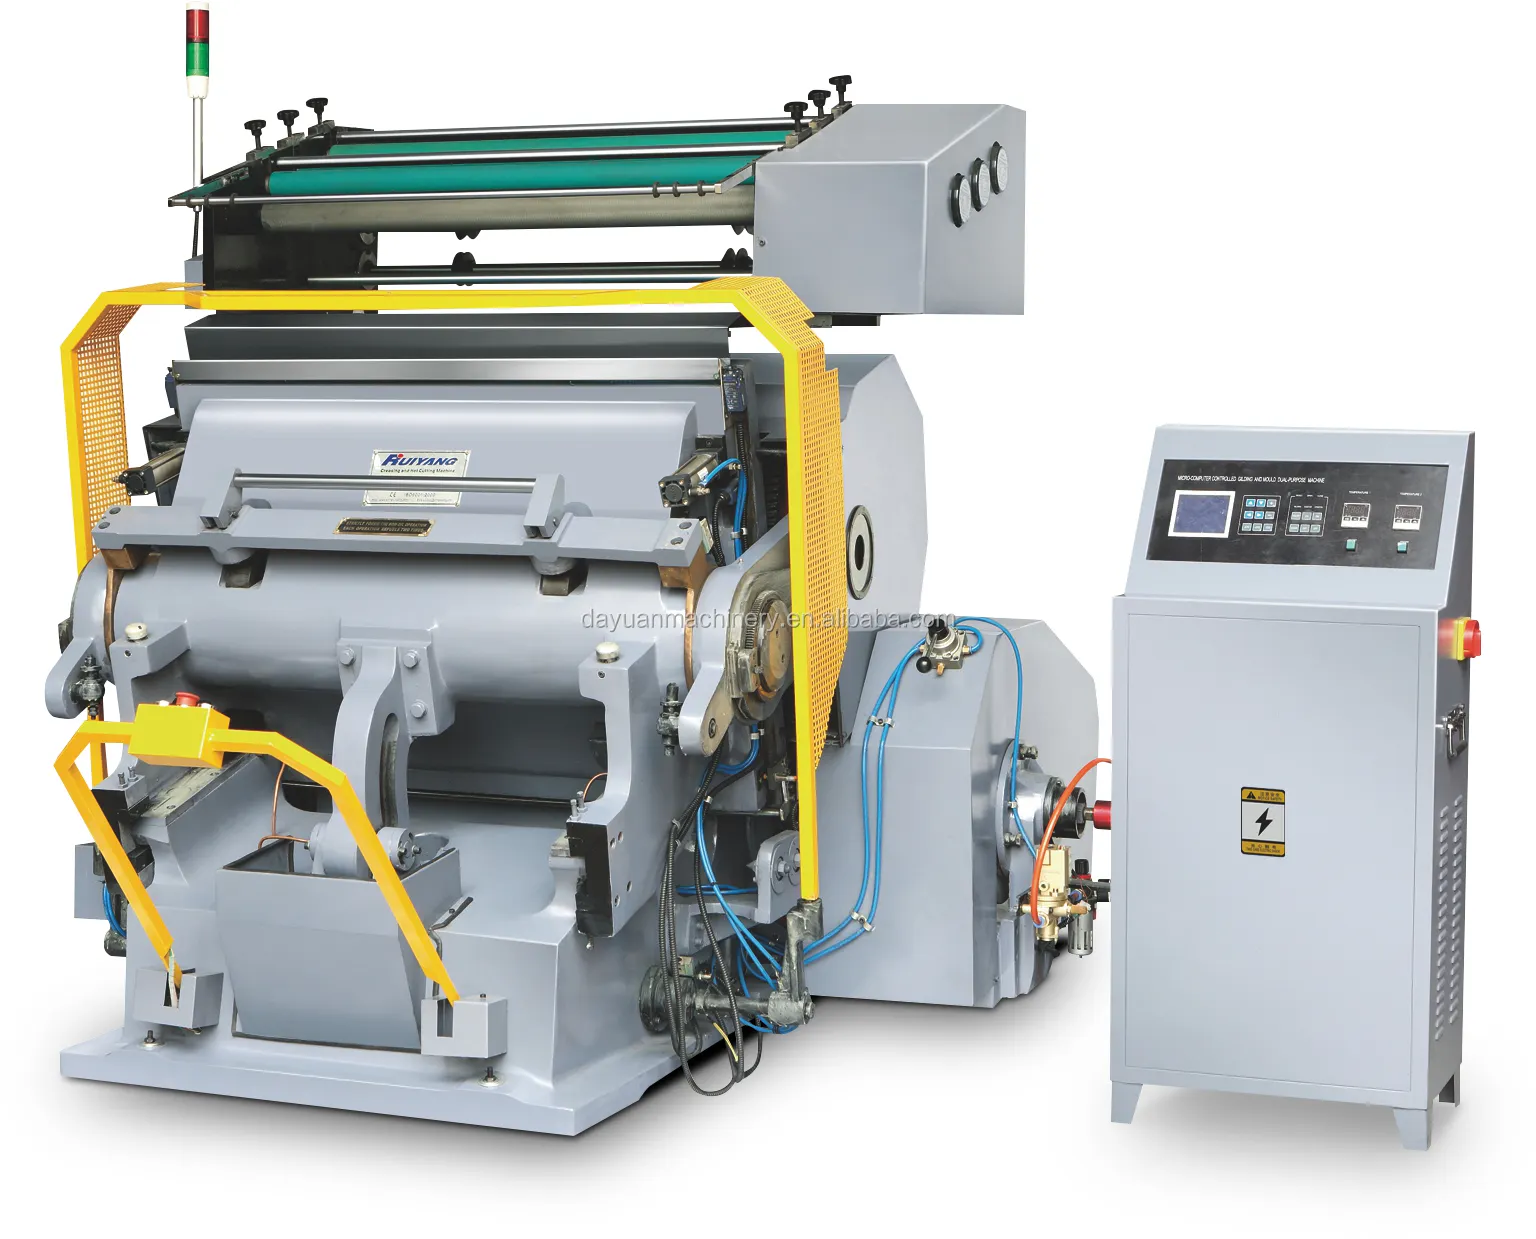 TYMB1040 stampa a Caldo e macchina di taglio, macchina di stampaggio a caldo, stampa a caldo macchina